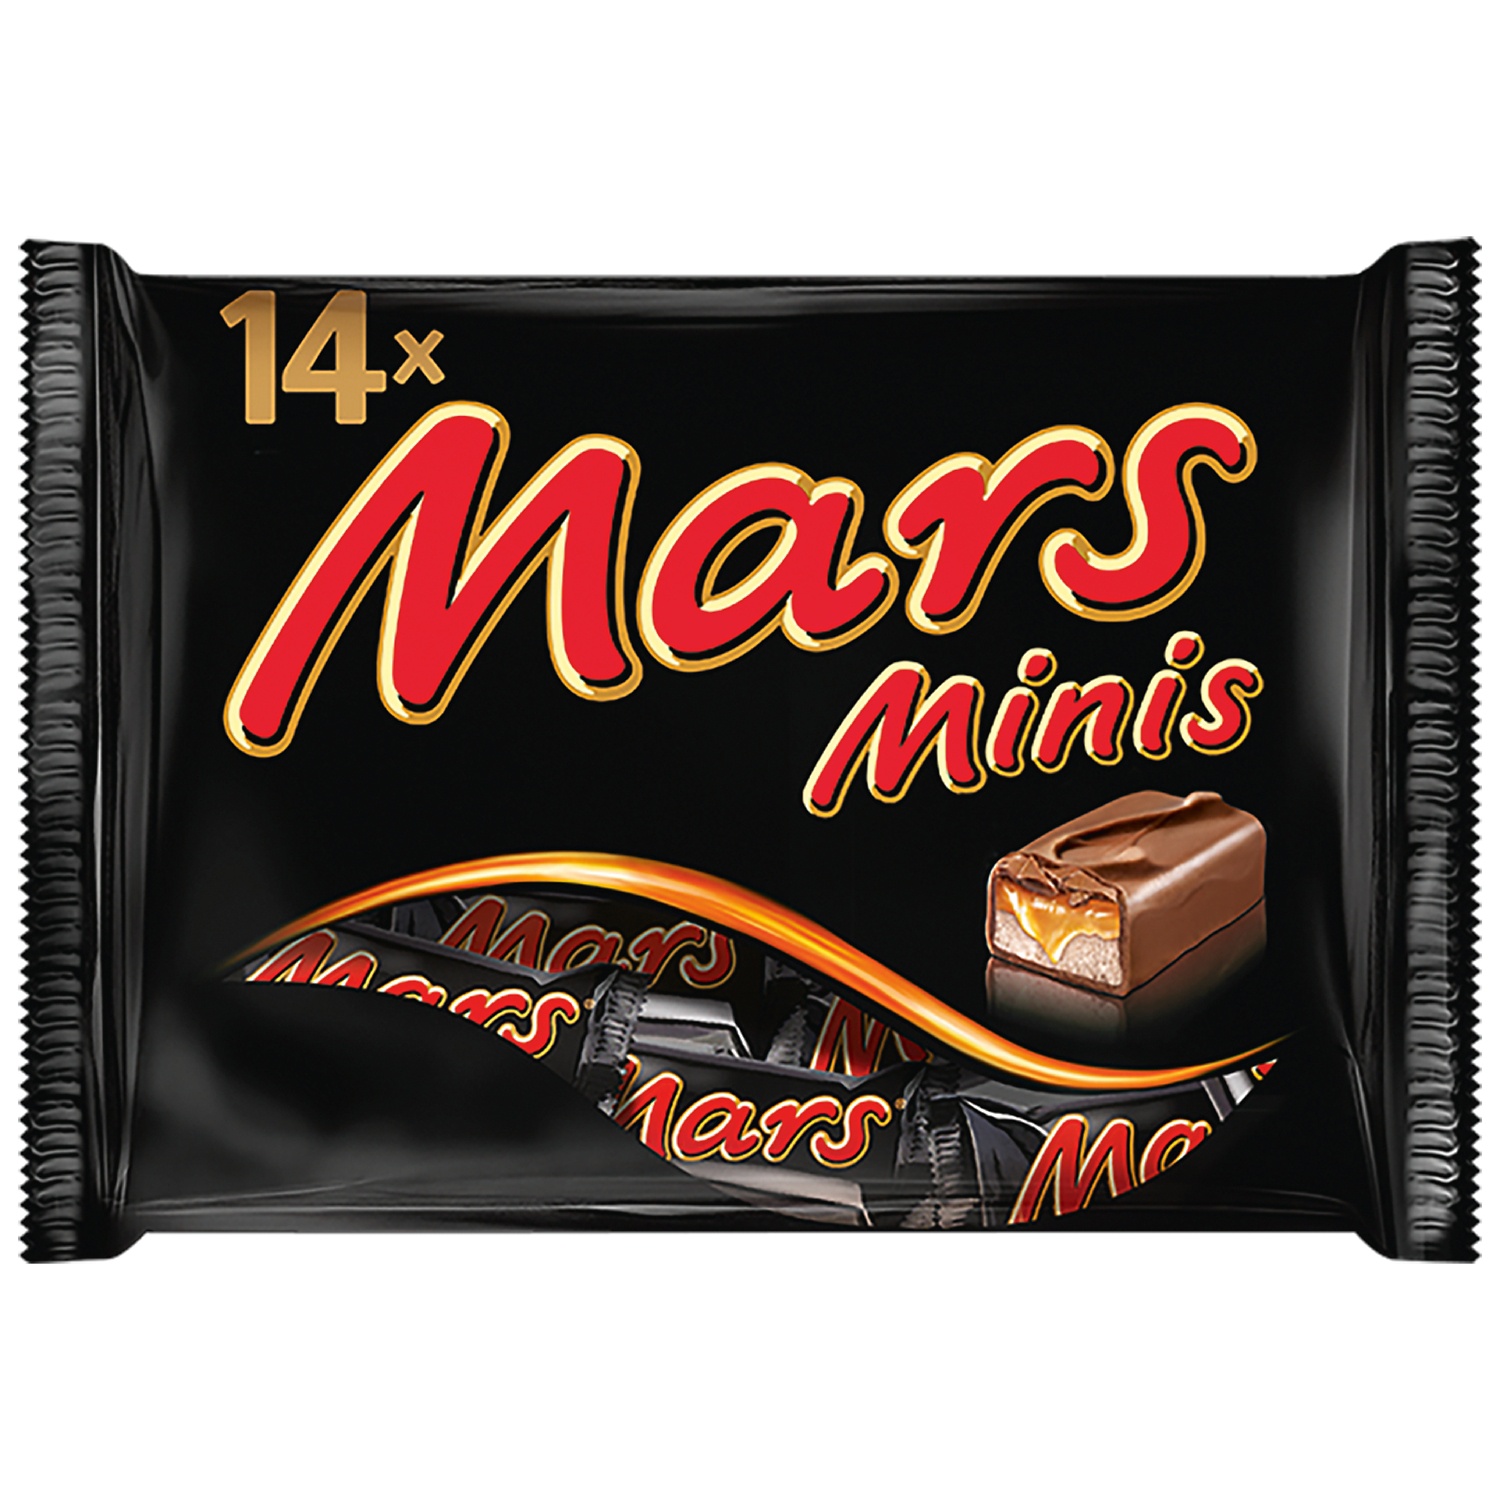 Mini-Riegel, Mars